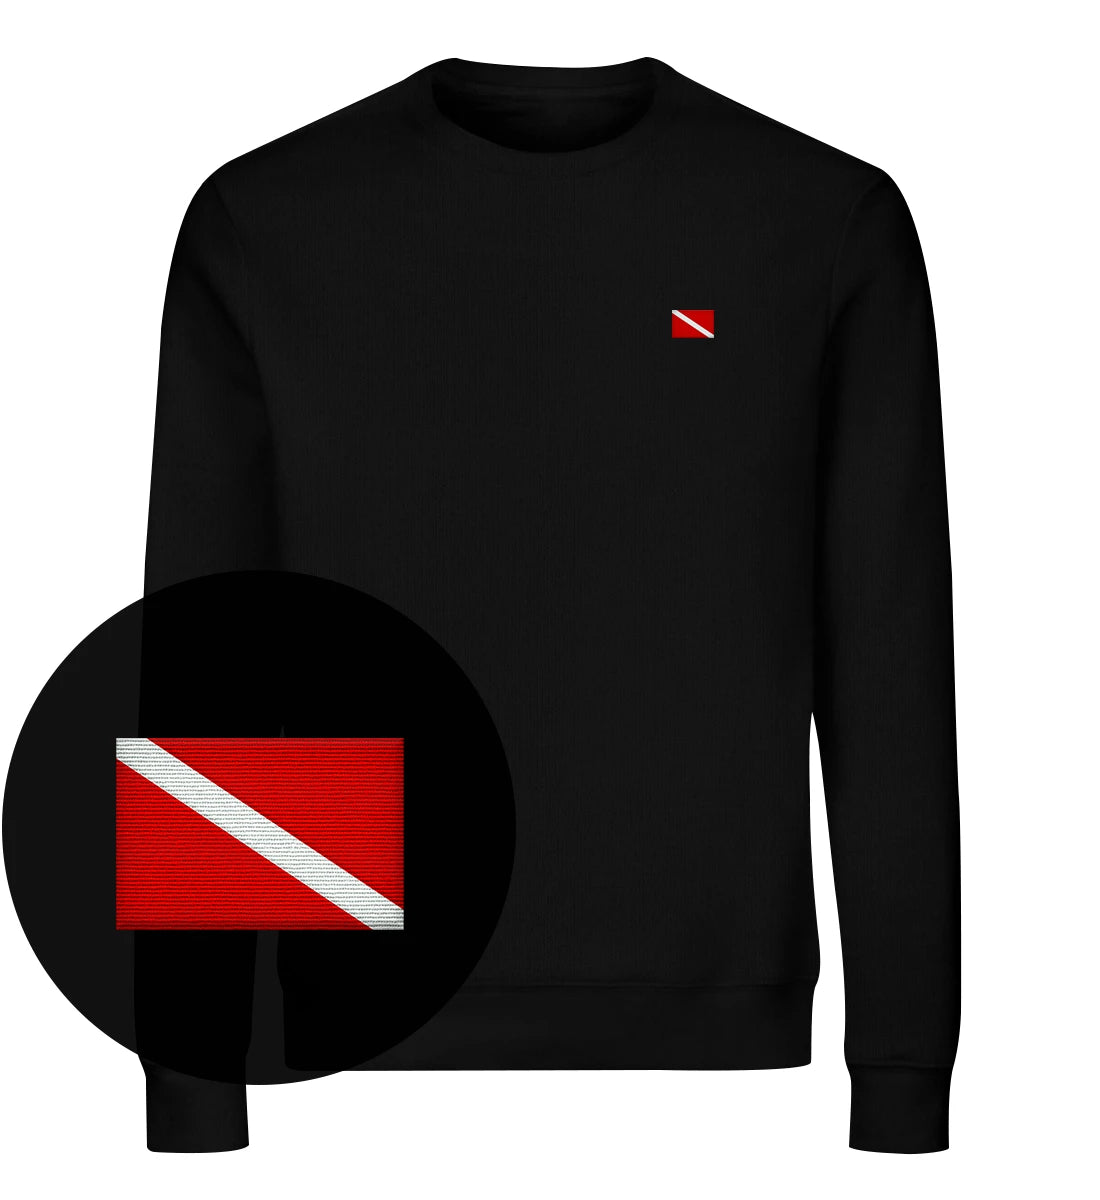 Taucherflagge gestickt - Bio Sweater mit Stick